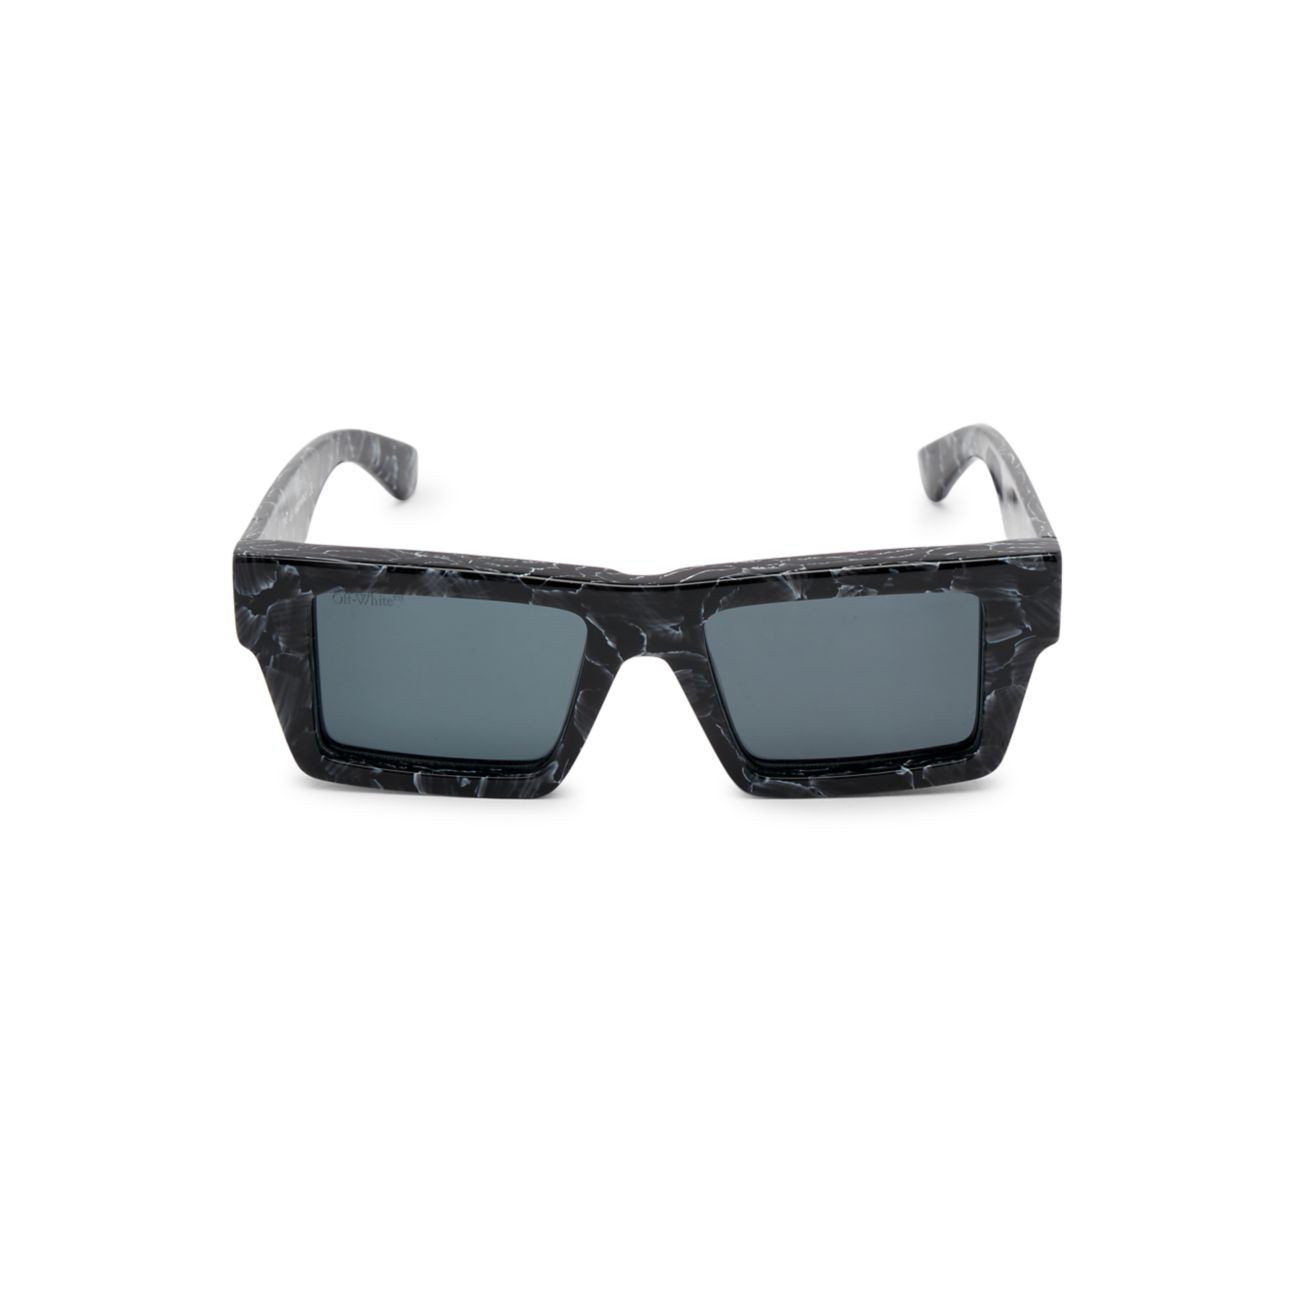 Прямоугольные солнцезащитные очки Nassau 147 мм Off-White